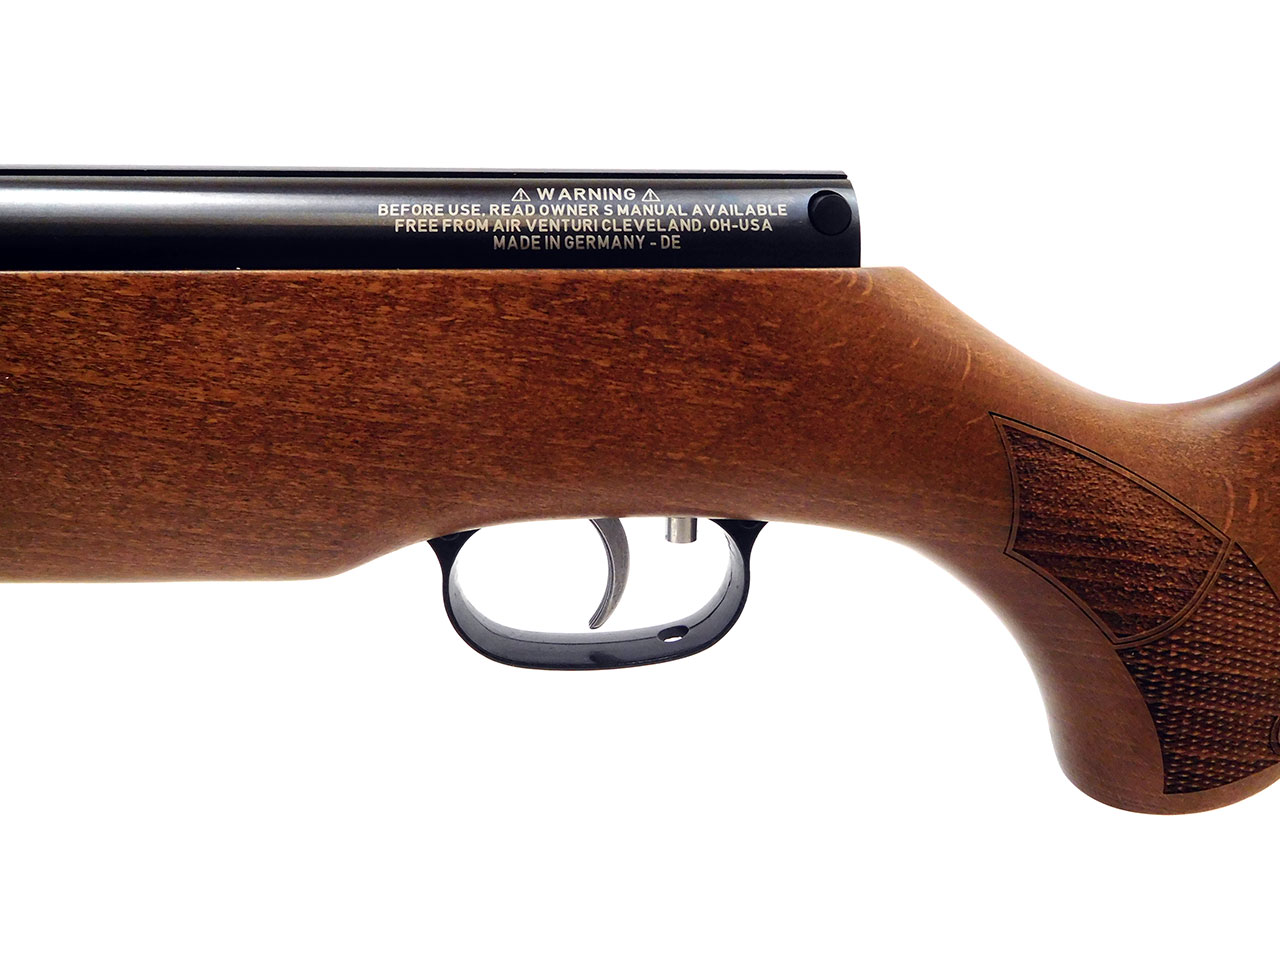  Weihrauch  HW 50 S Wood Stock Pellet  Rifle  Baker Airguns